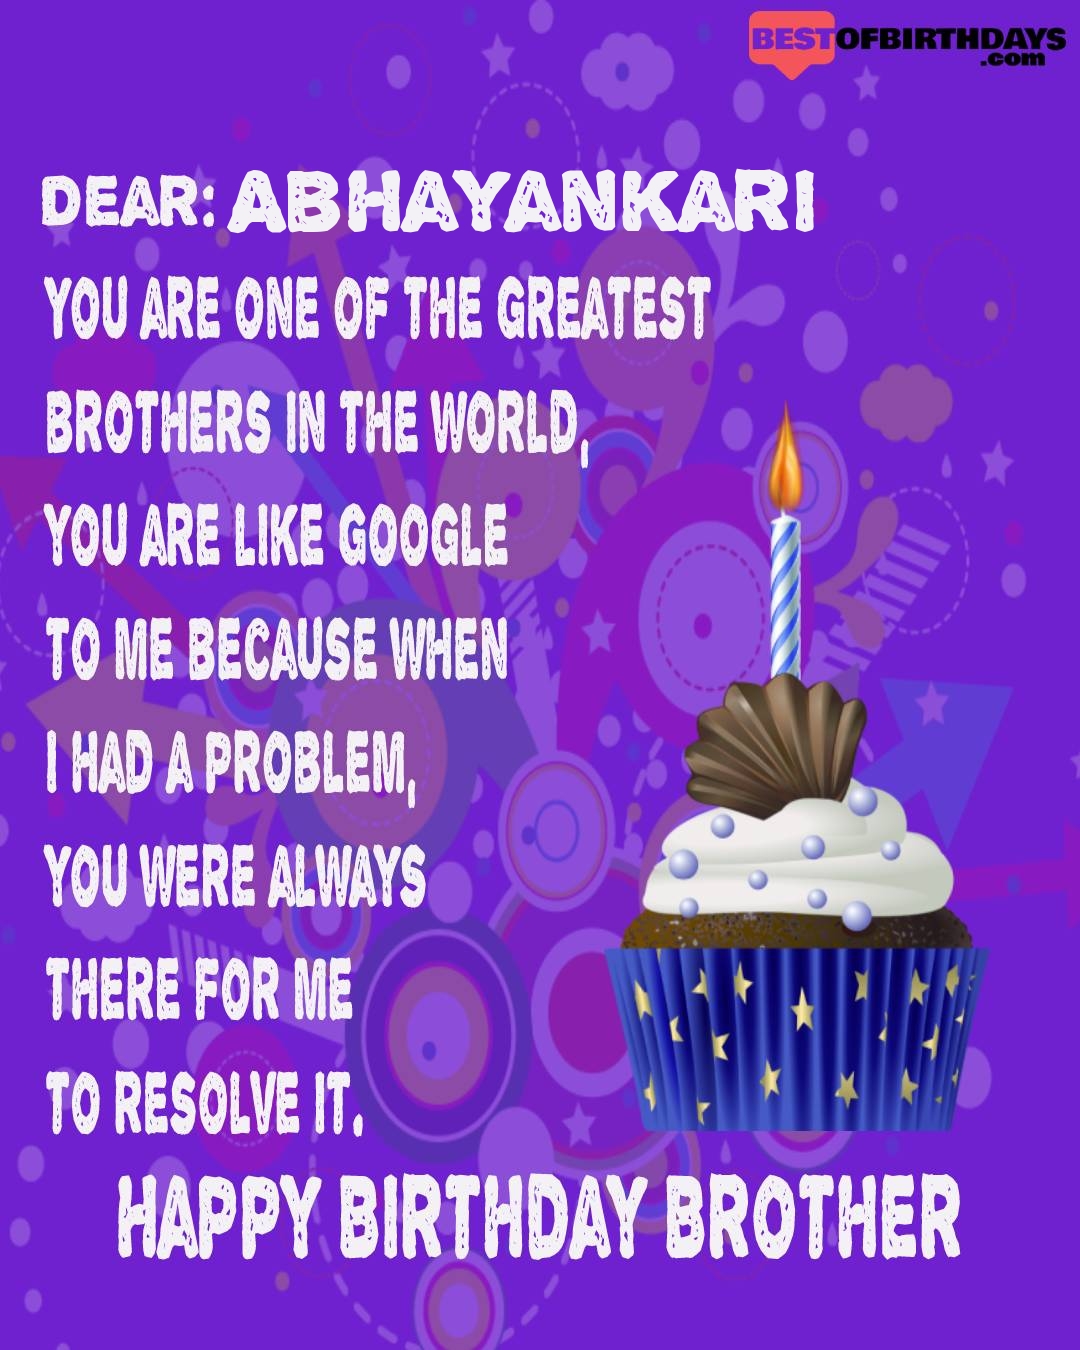 Happy birthday abhayankari bhai brother bro